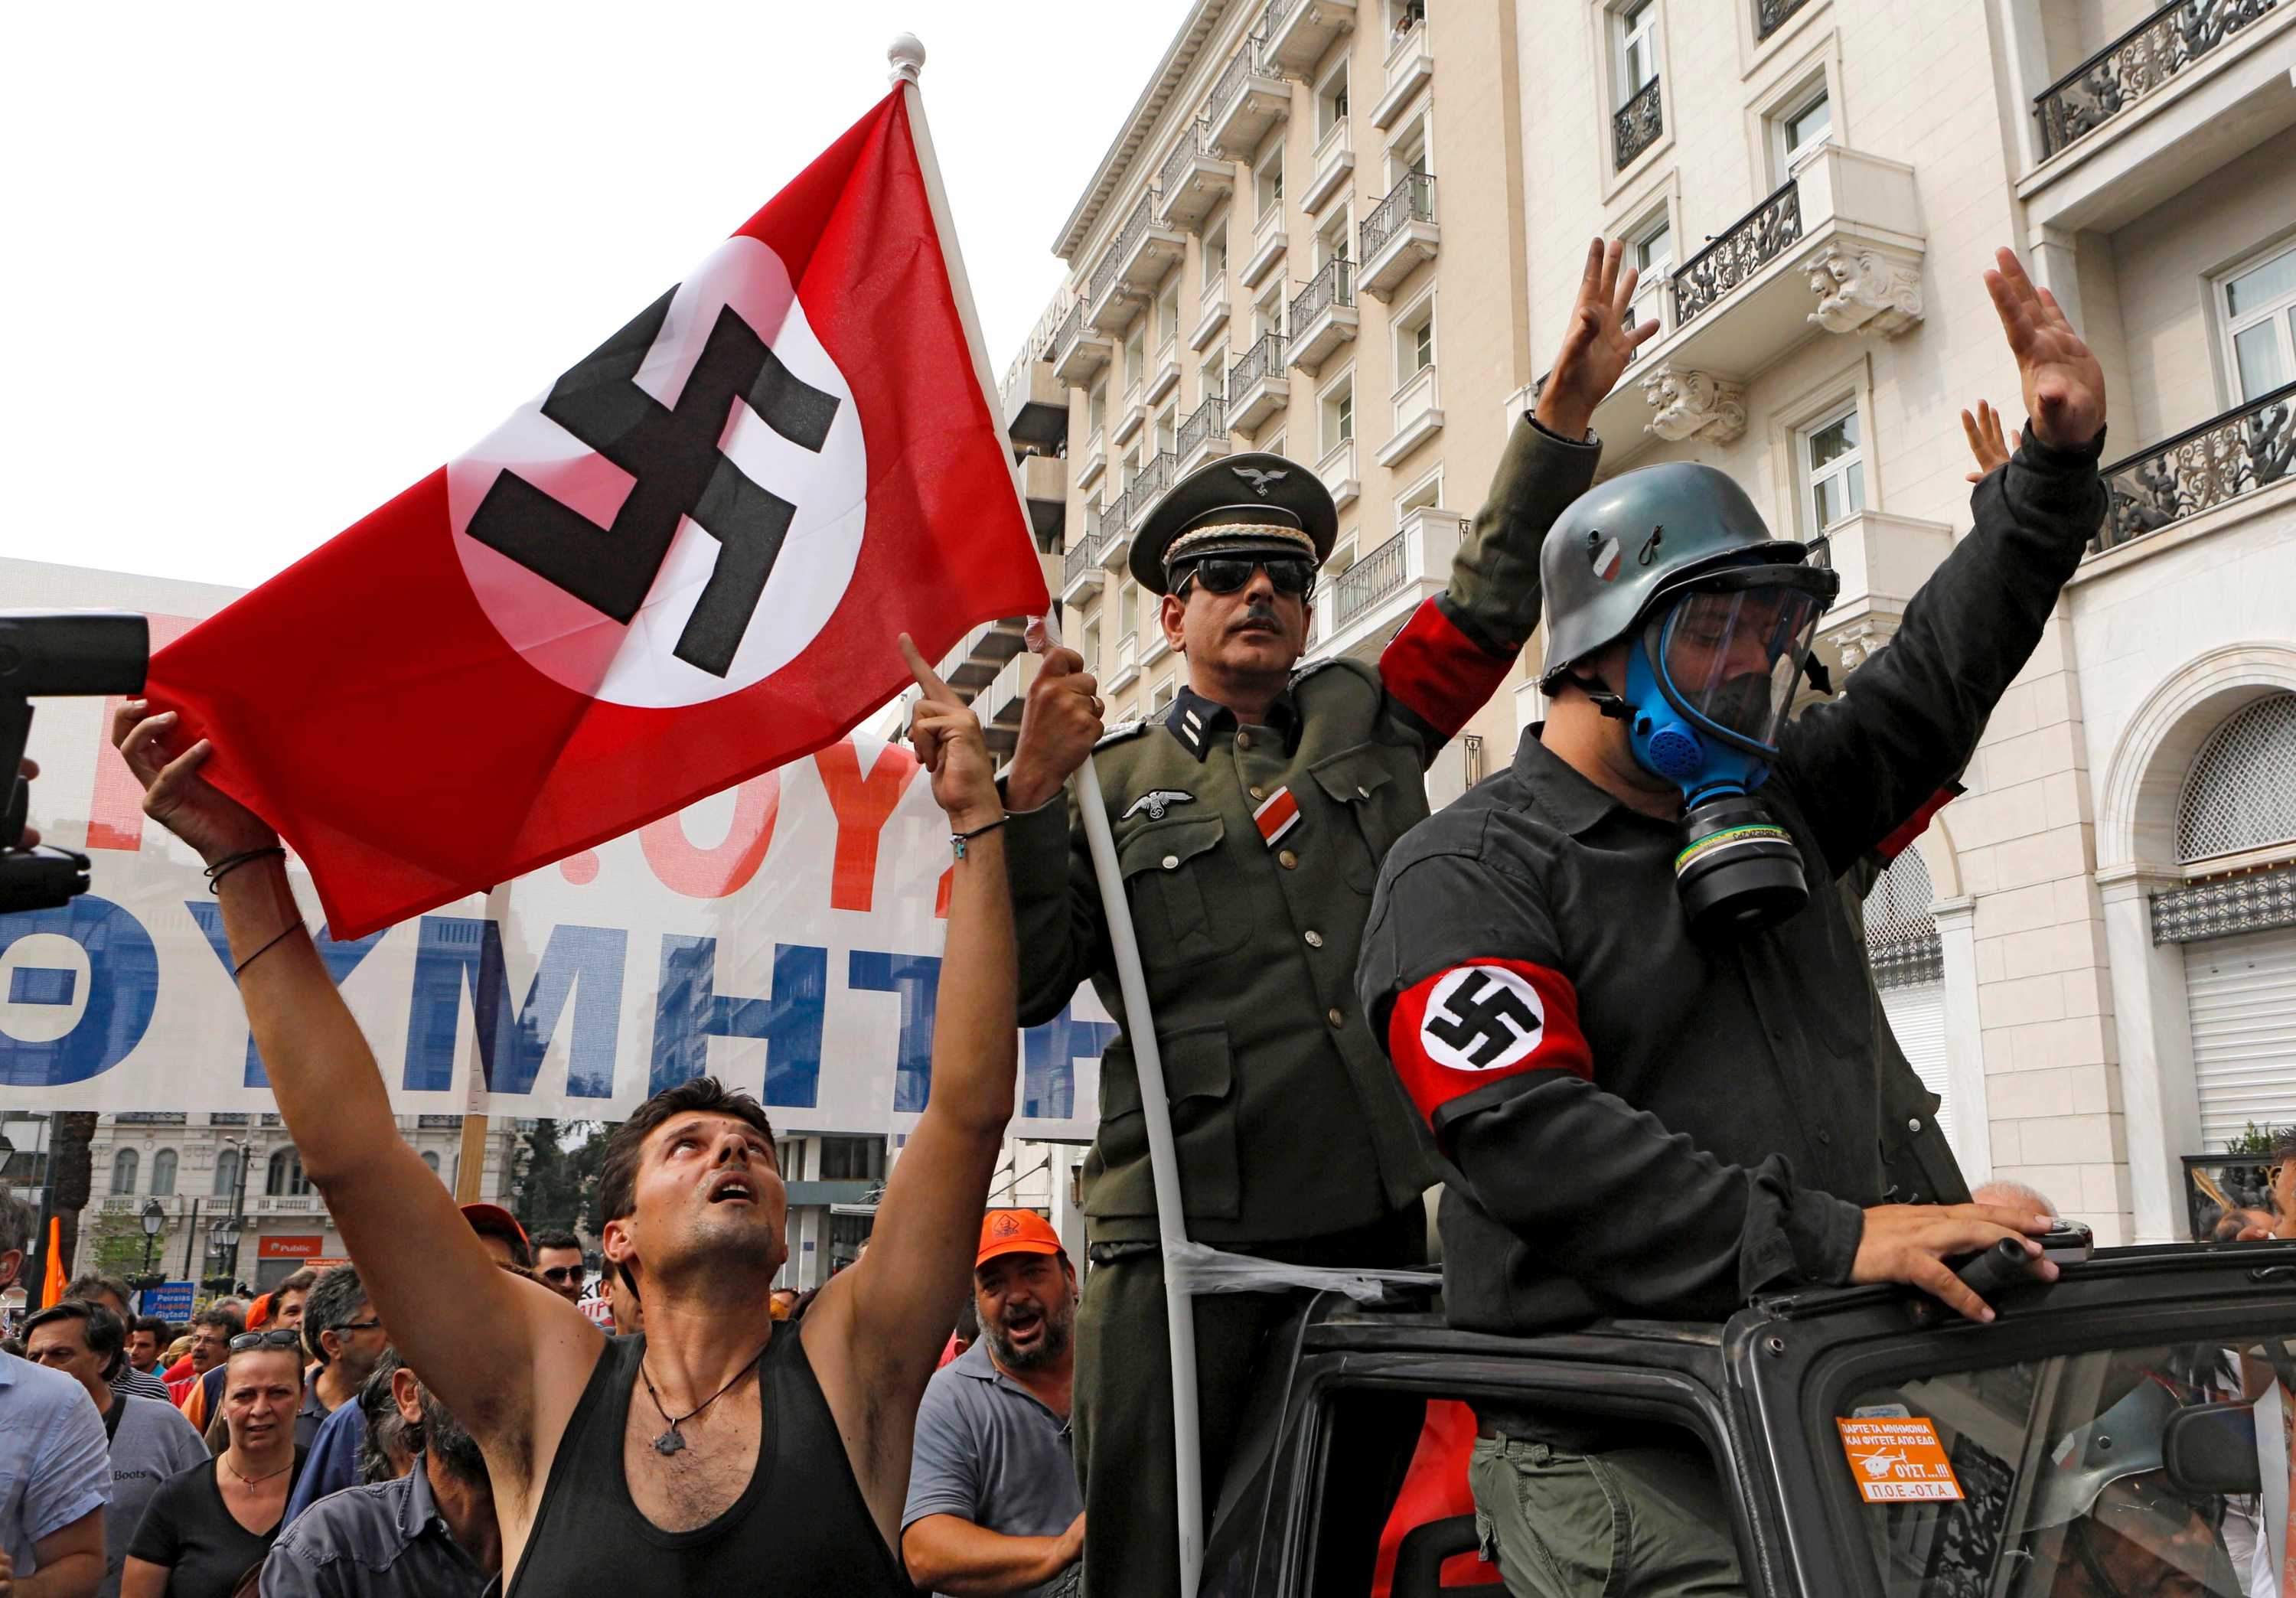 Национал 4. Флаг неонацистов Германии. Неонацисты в Германии 2020. Неонацисты в Германии 2022. Современные нацисты.